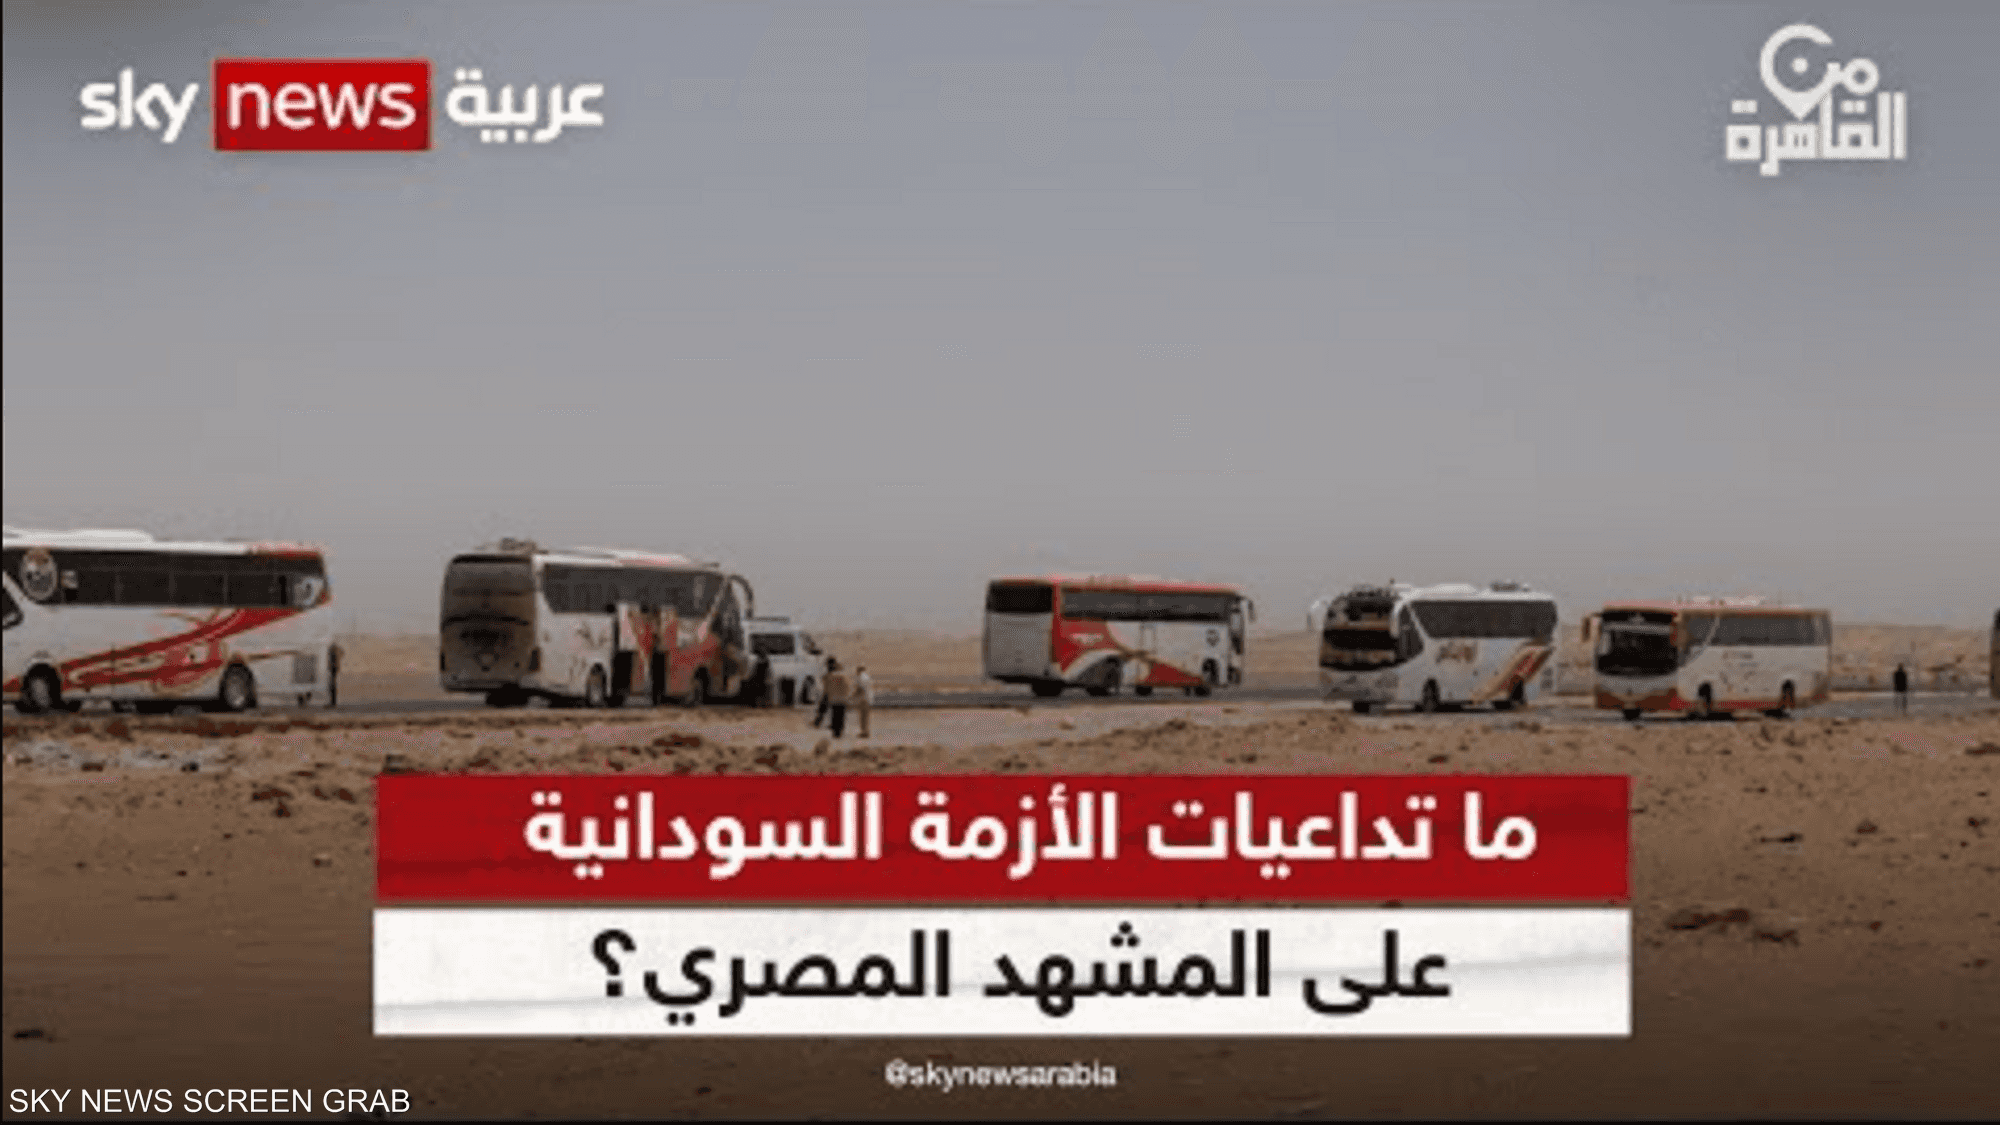 أزمة السودان تلقي بظلالها على المشهد المصري.. فما التداعيات؟